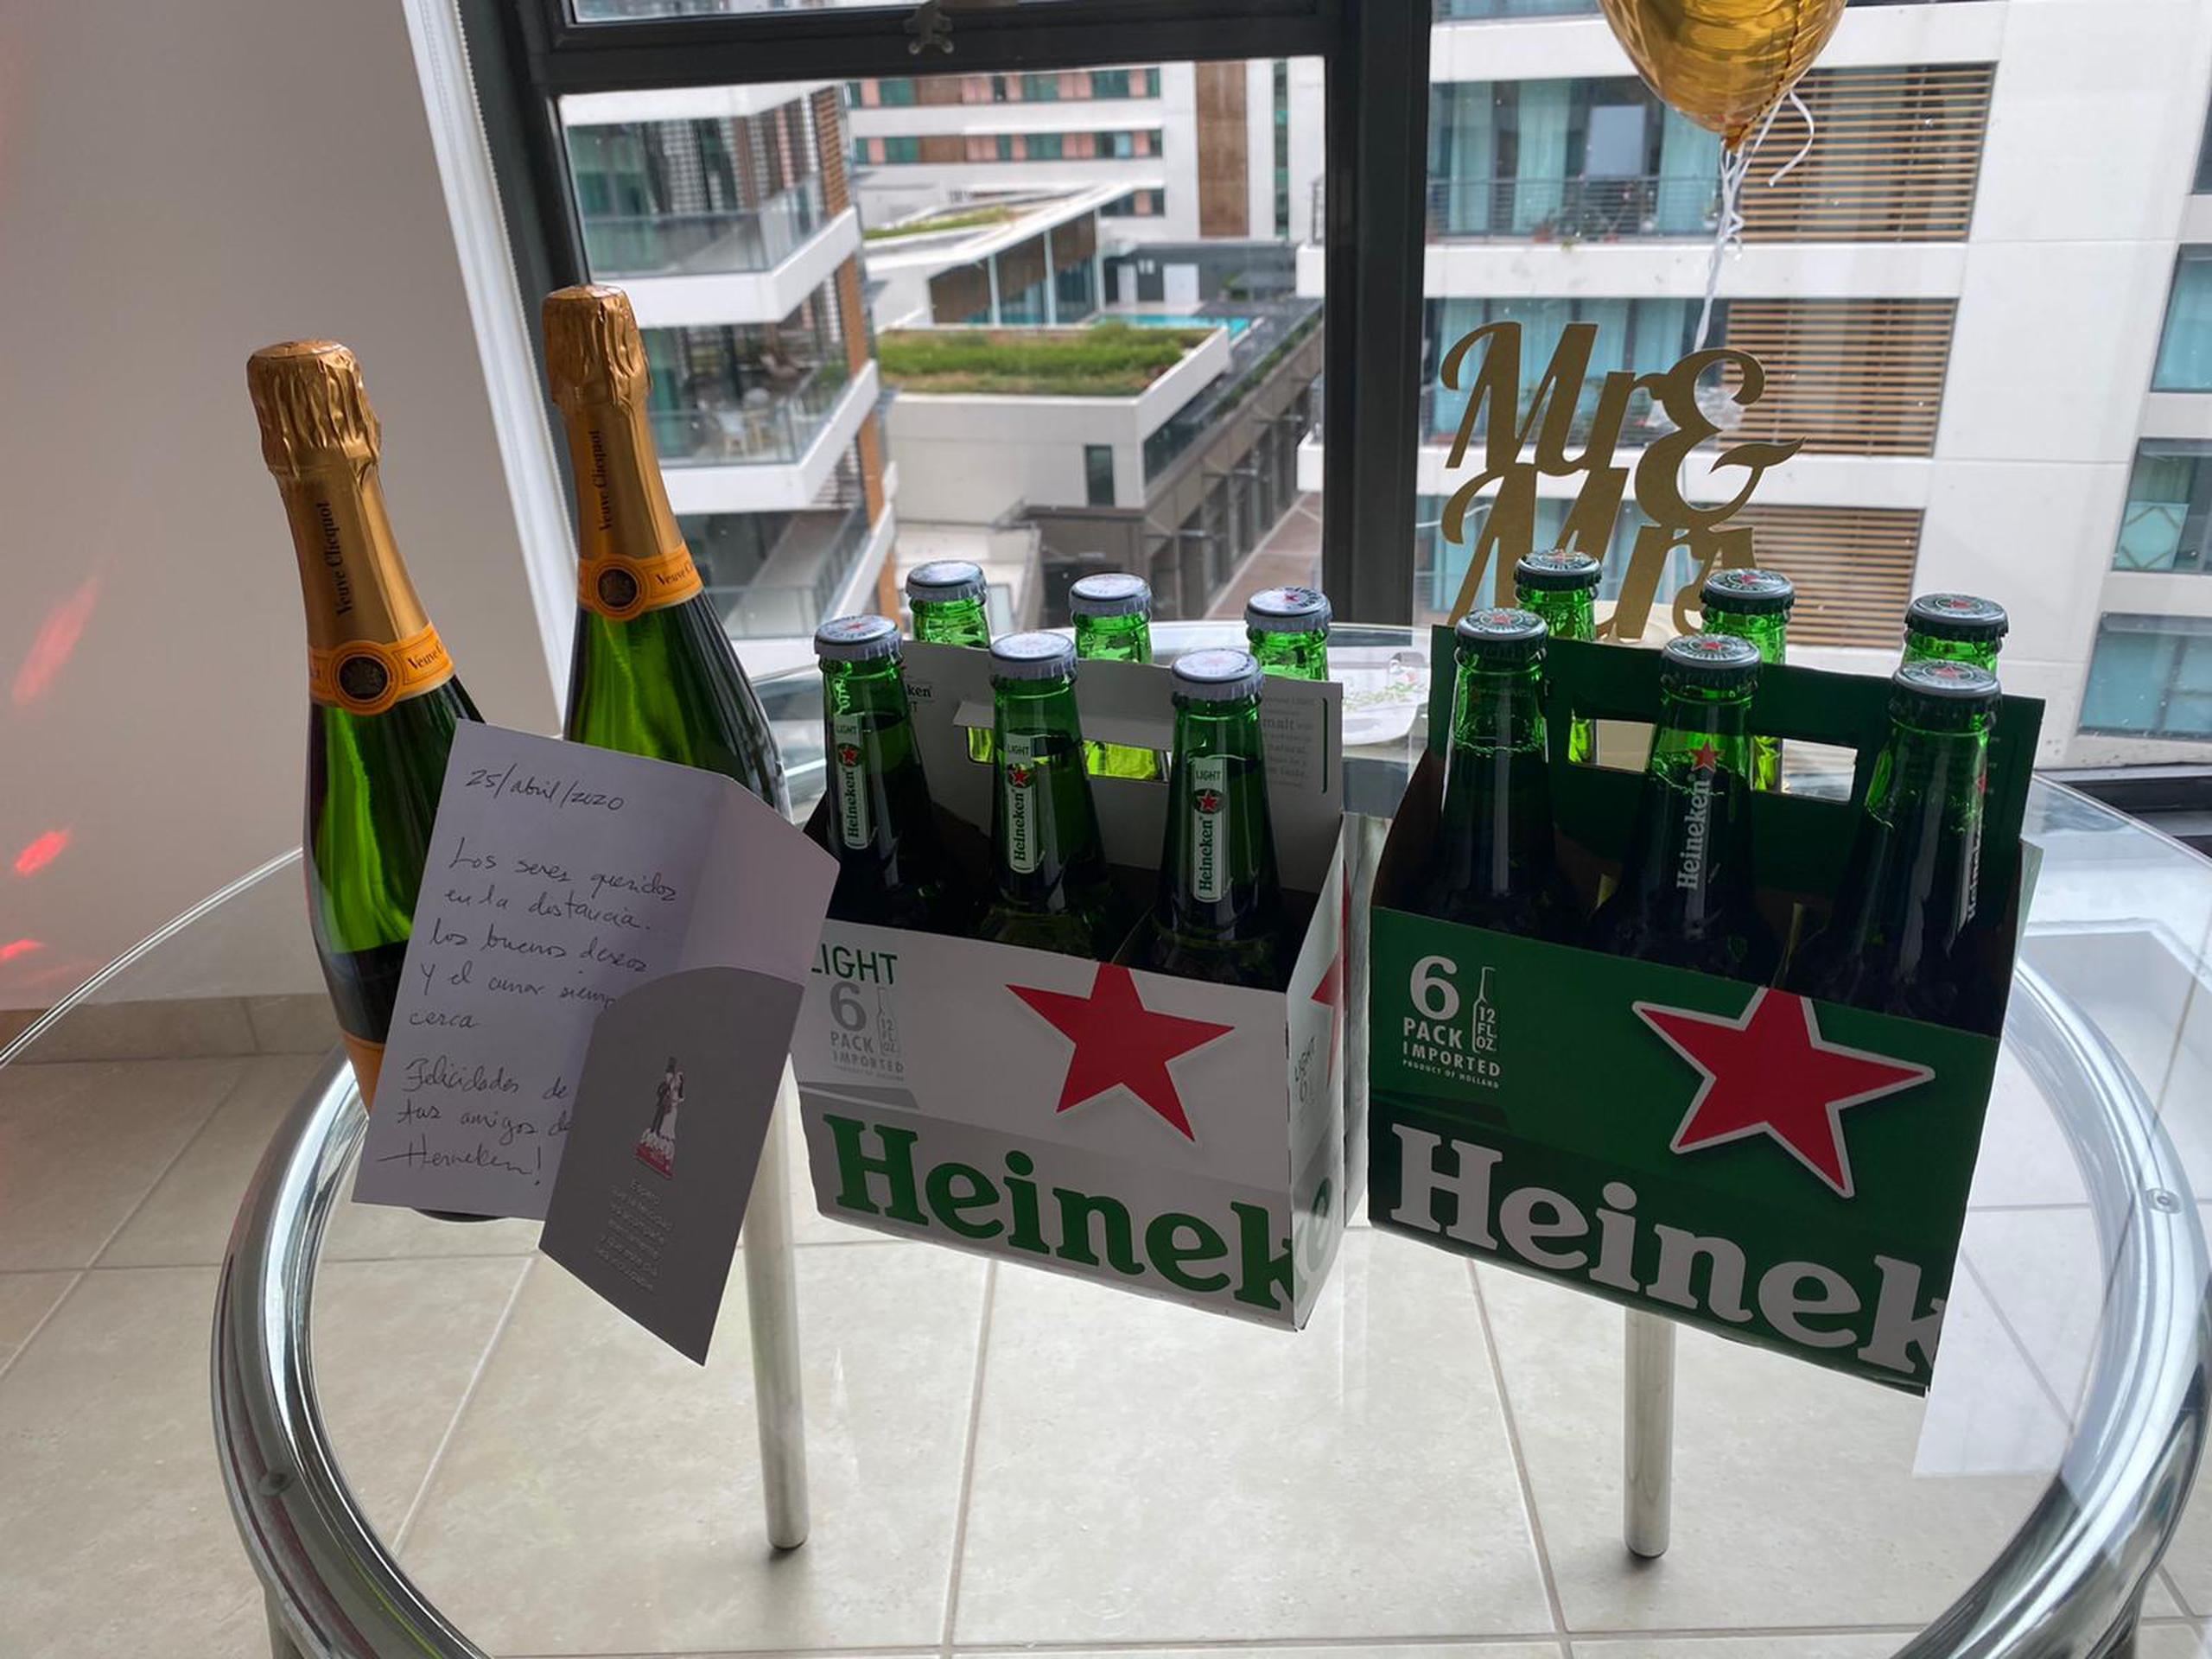 Heineken les envió un obsequio junto a una postal de felicitación.